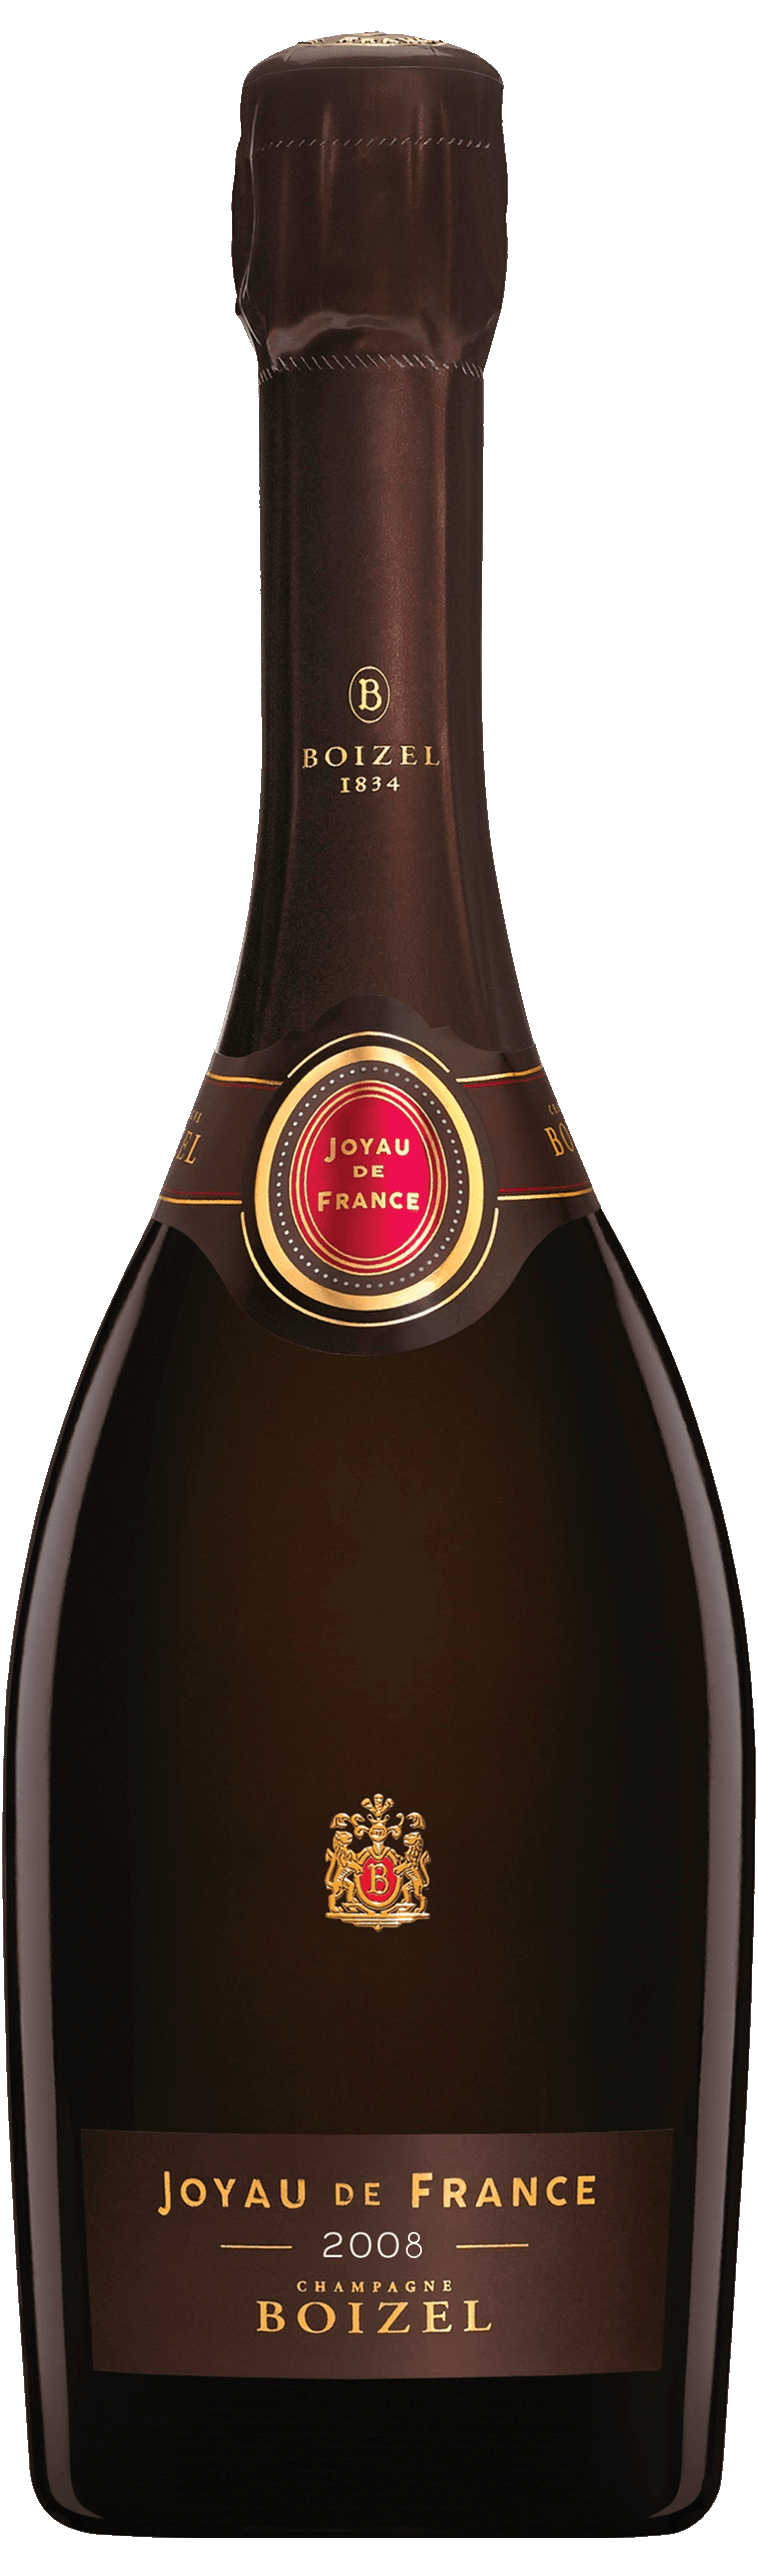 Champagne Boizel Joyau de France 2008